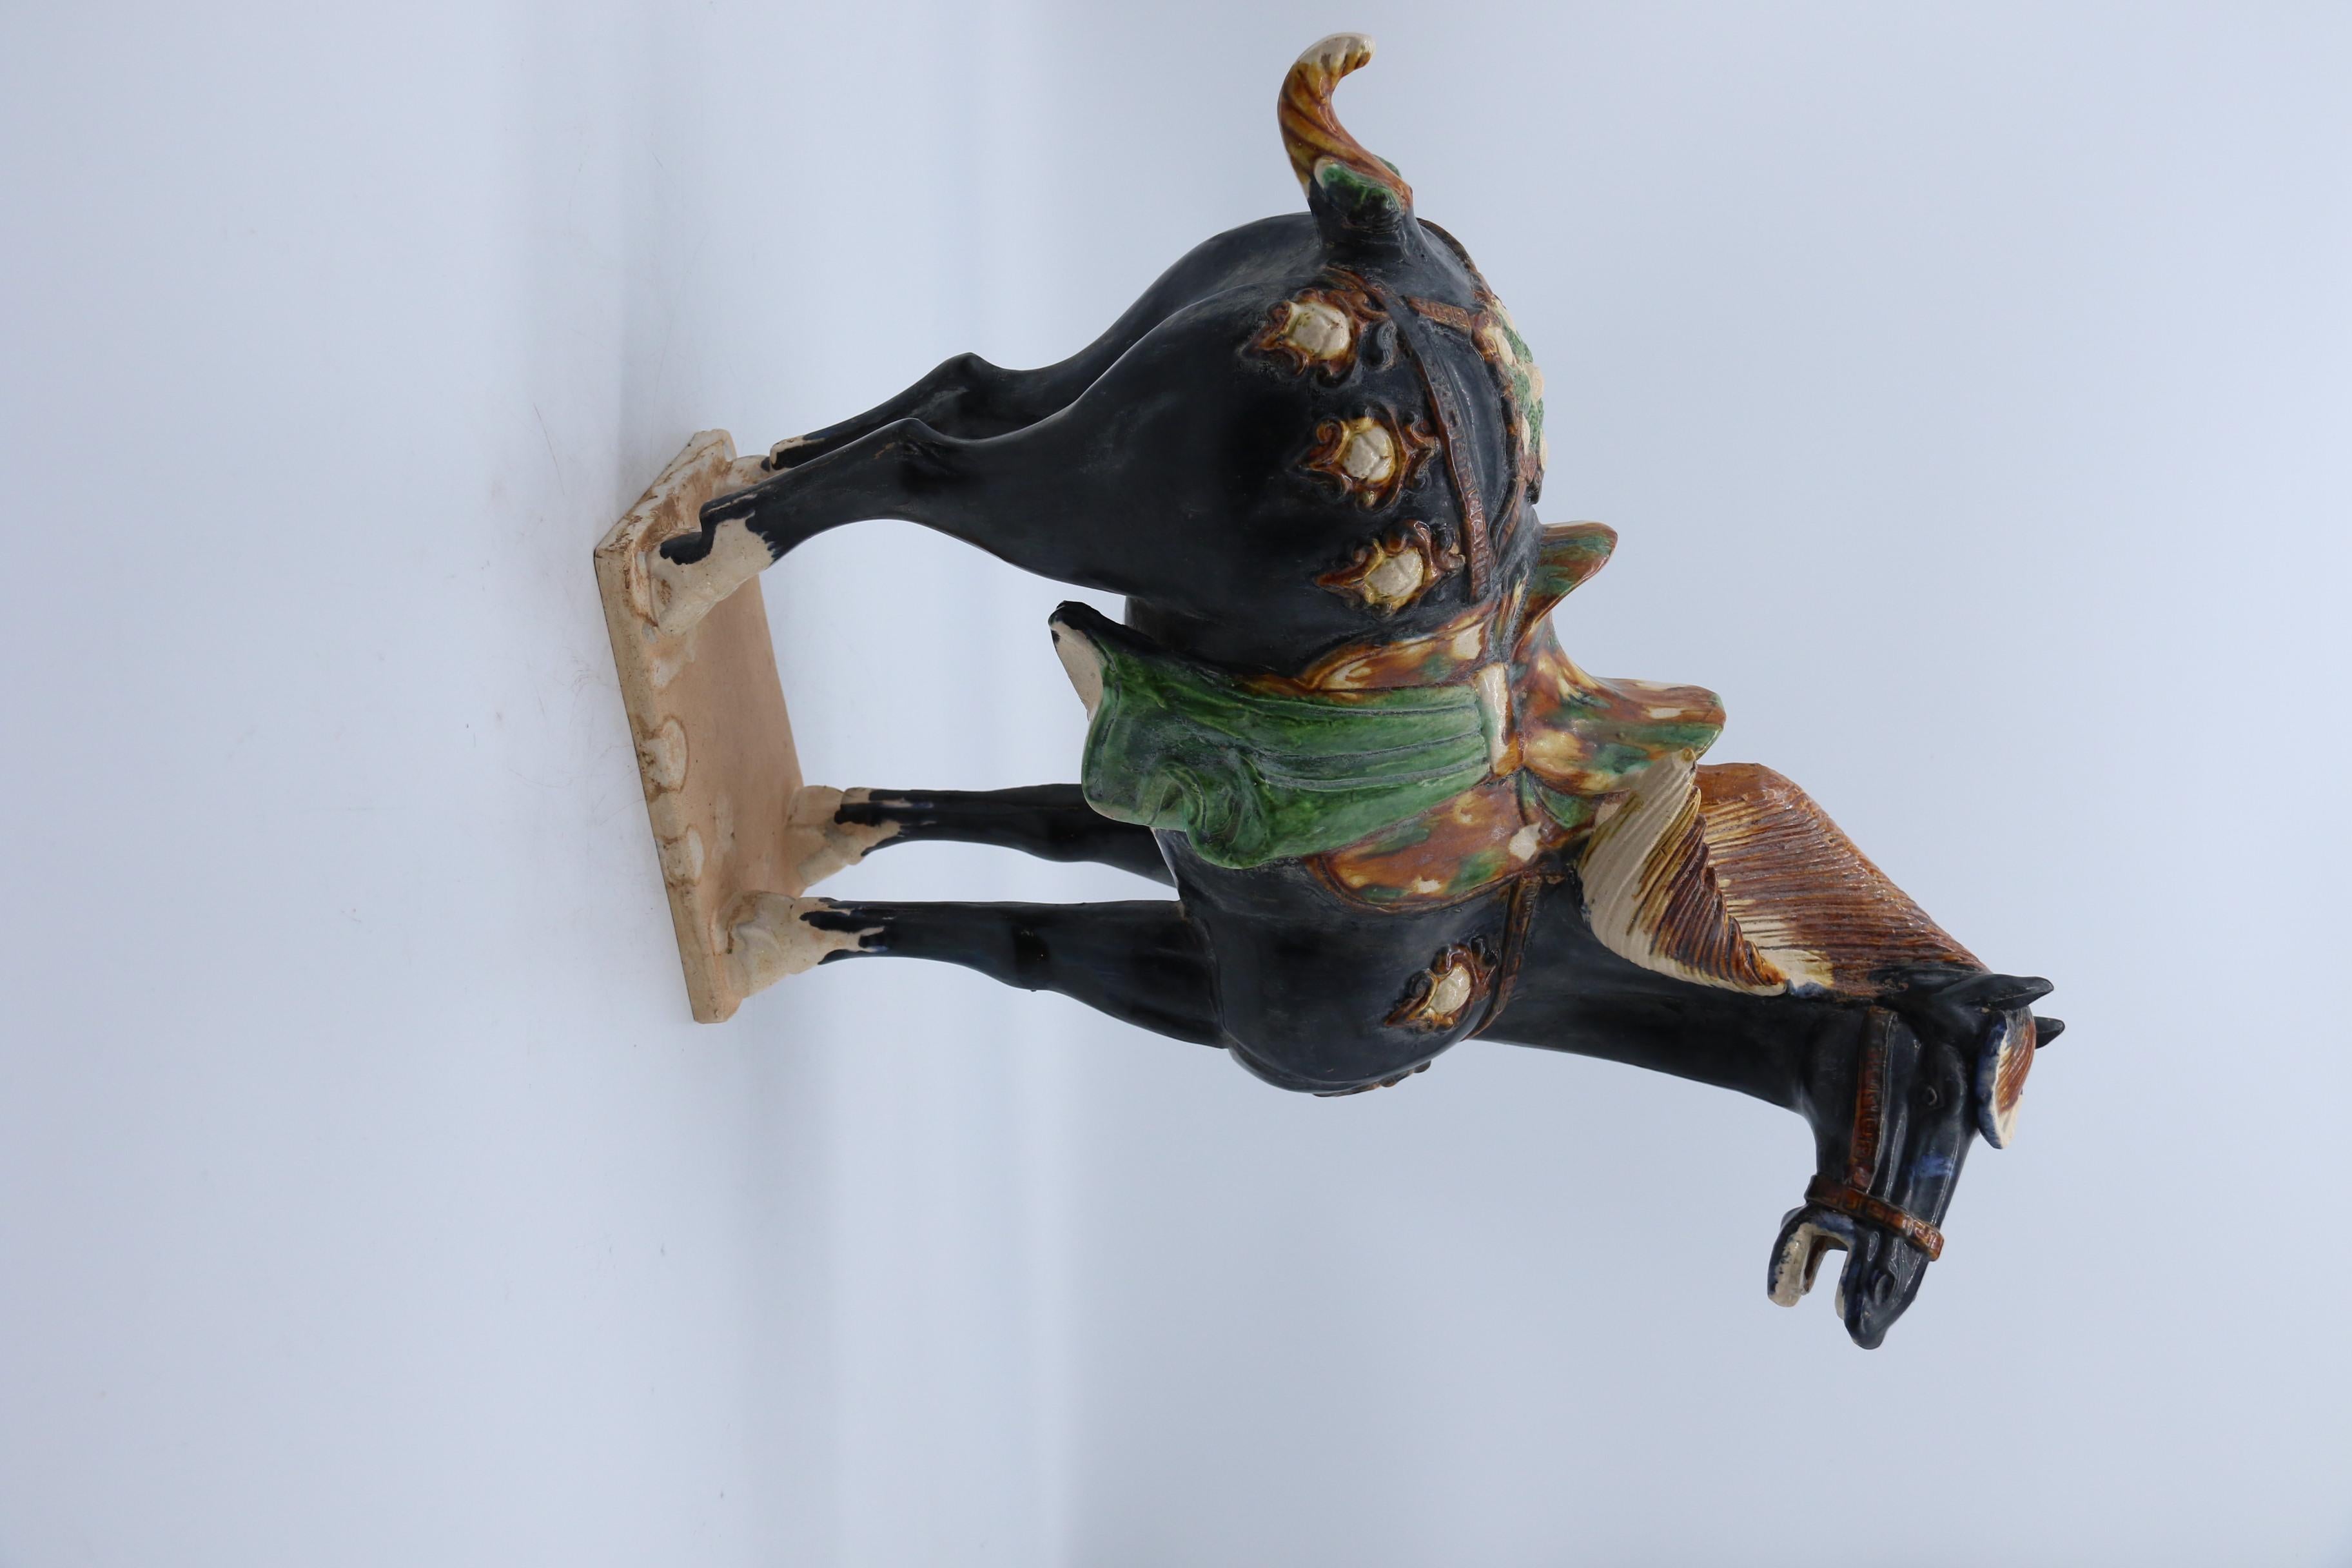 Trueing ist in allen seinen Elementen den Originalen aus der frühen chinesischen Tang-Zeit nachempfunden. Das schwarz glasierte Pferd ist naturalistisch modelliert. Er steht auf einem rechteckigen Sockel mit detaillierter Mähne, Schweif und Hufen.